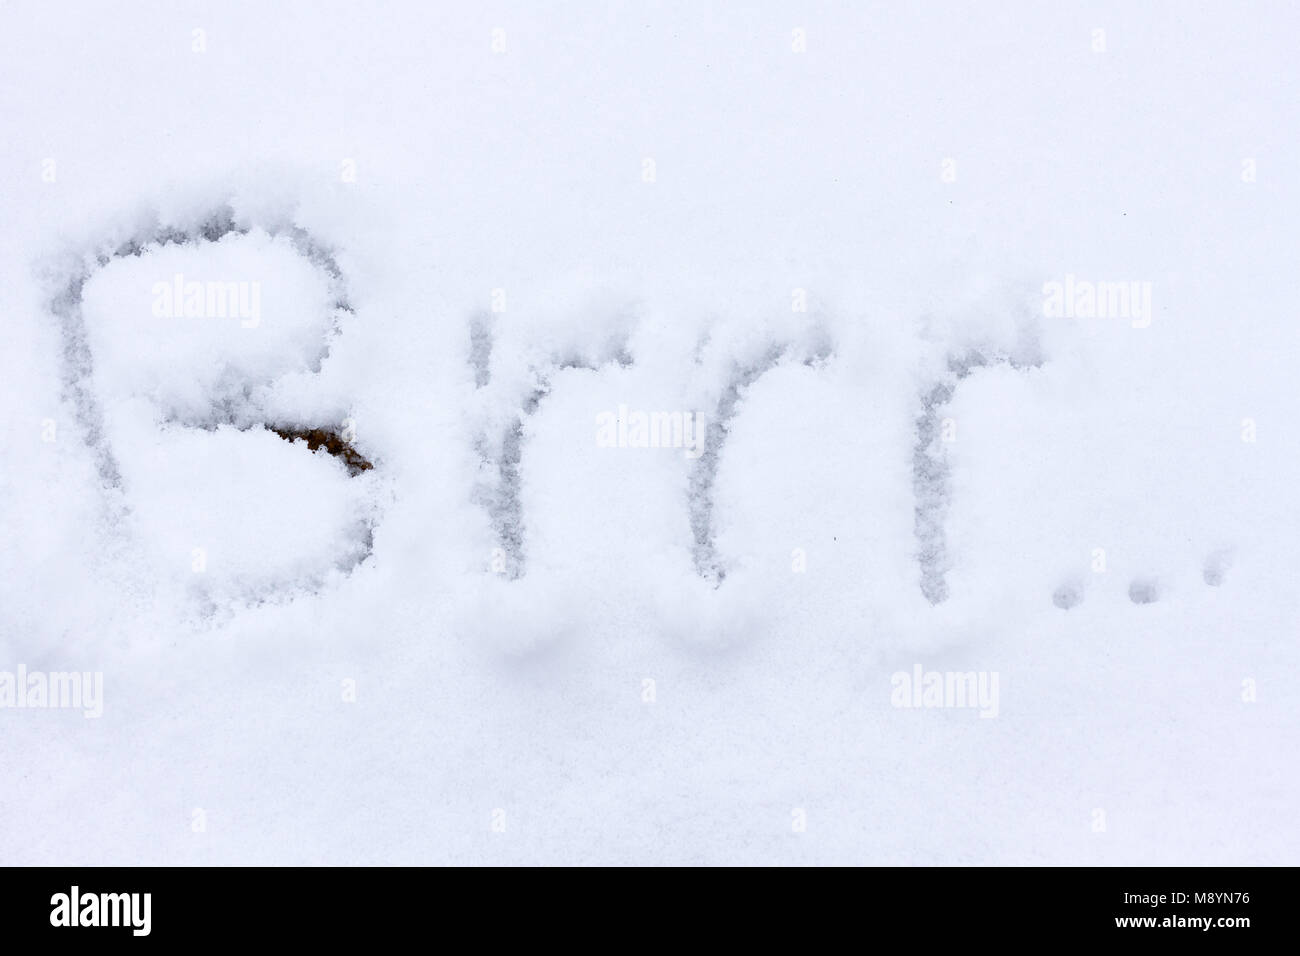 Das Wort brrr im Schnee geschrieben Stockfoto